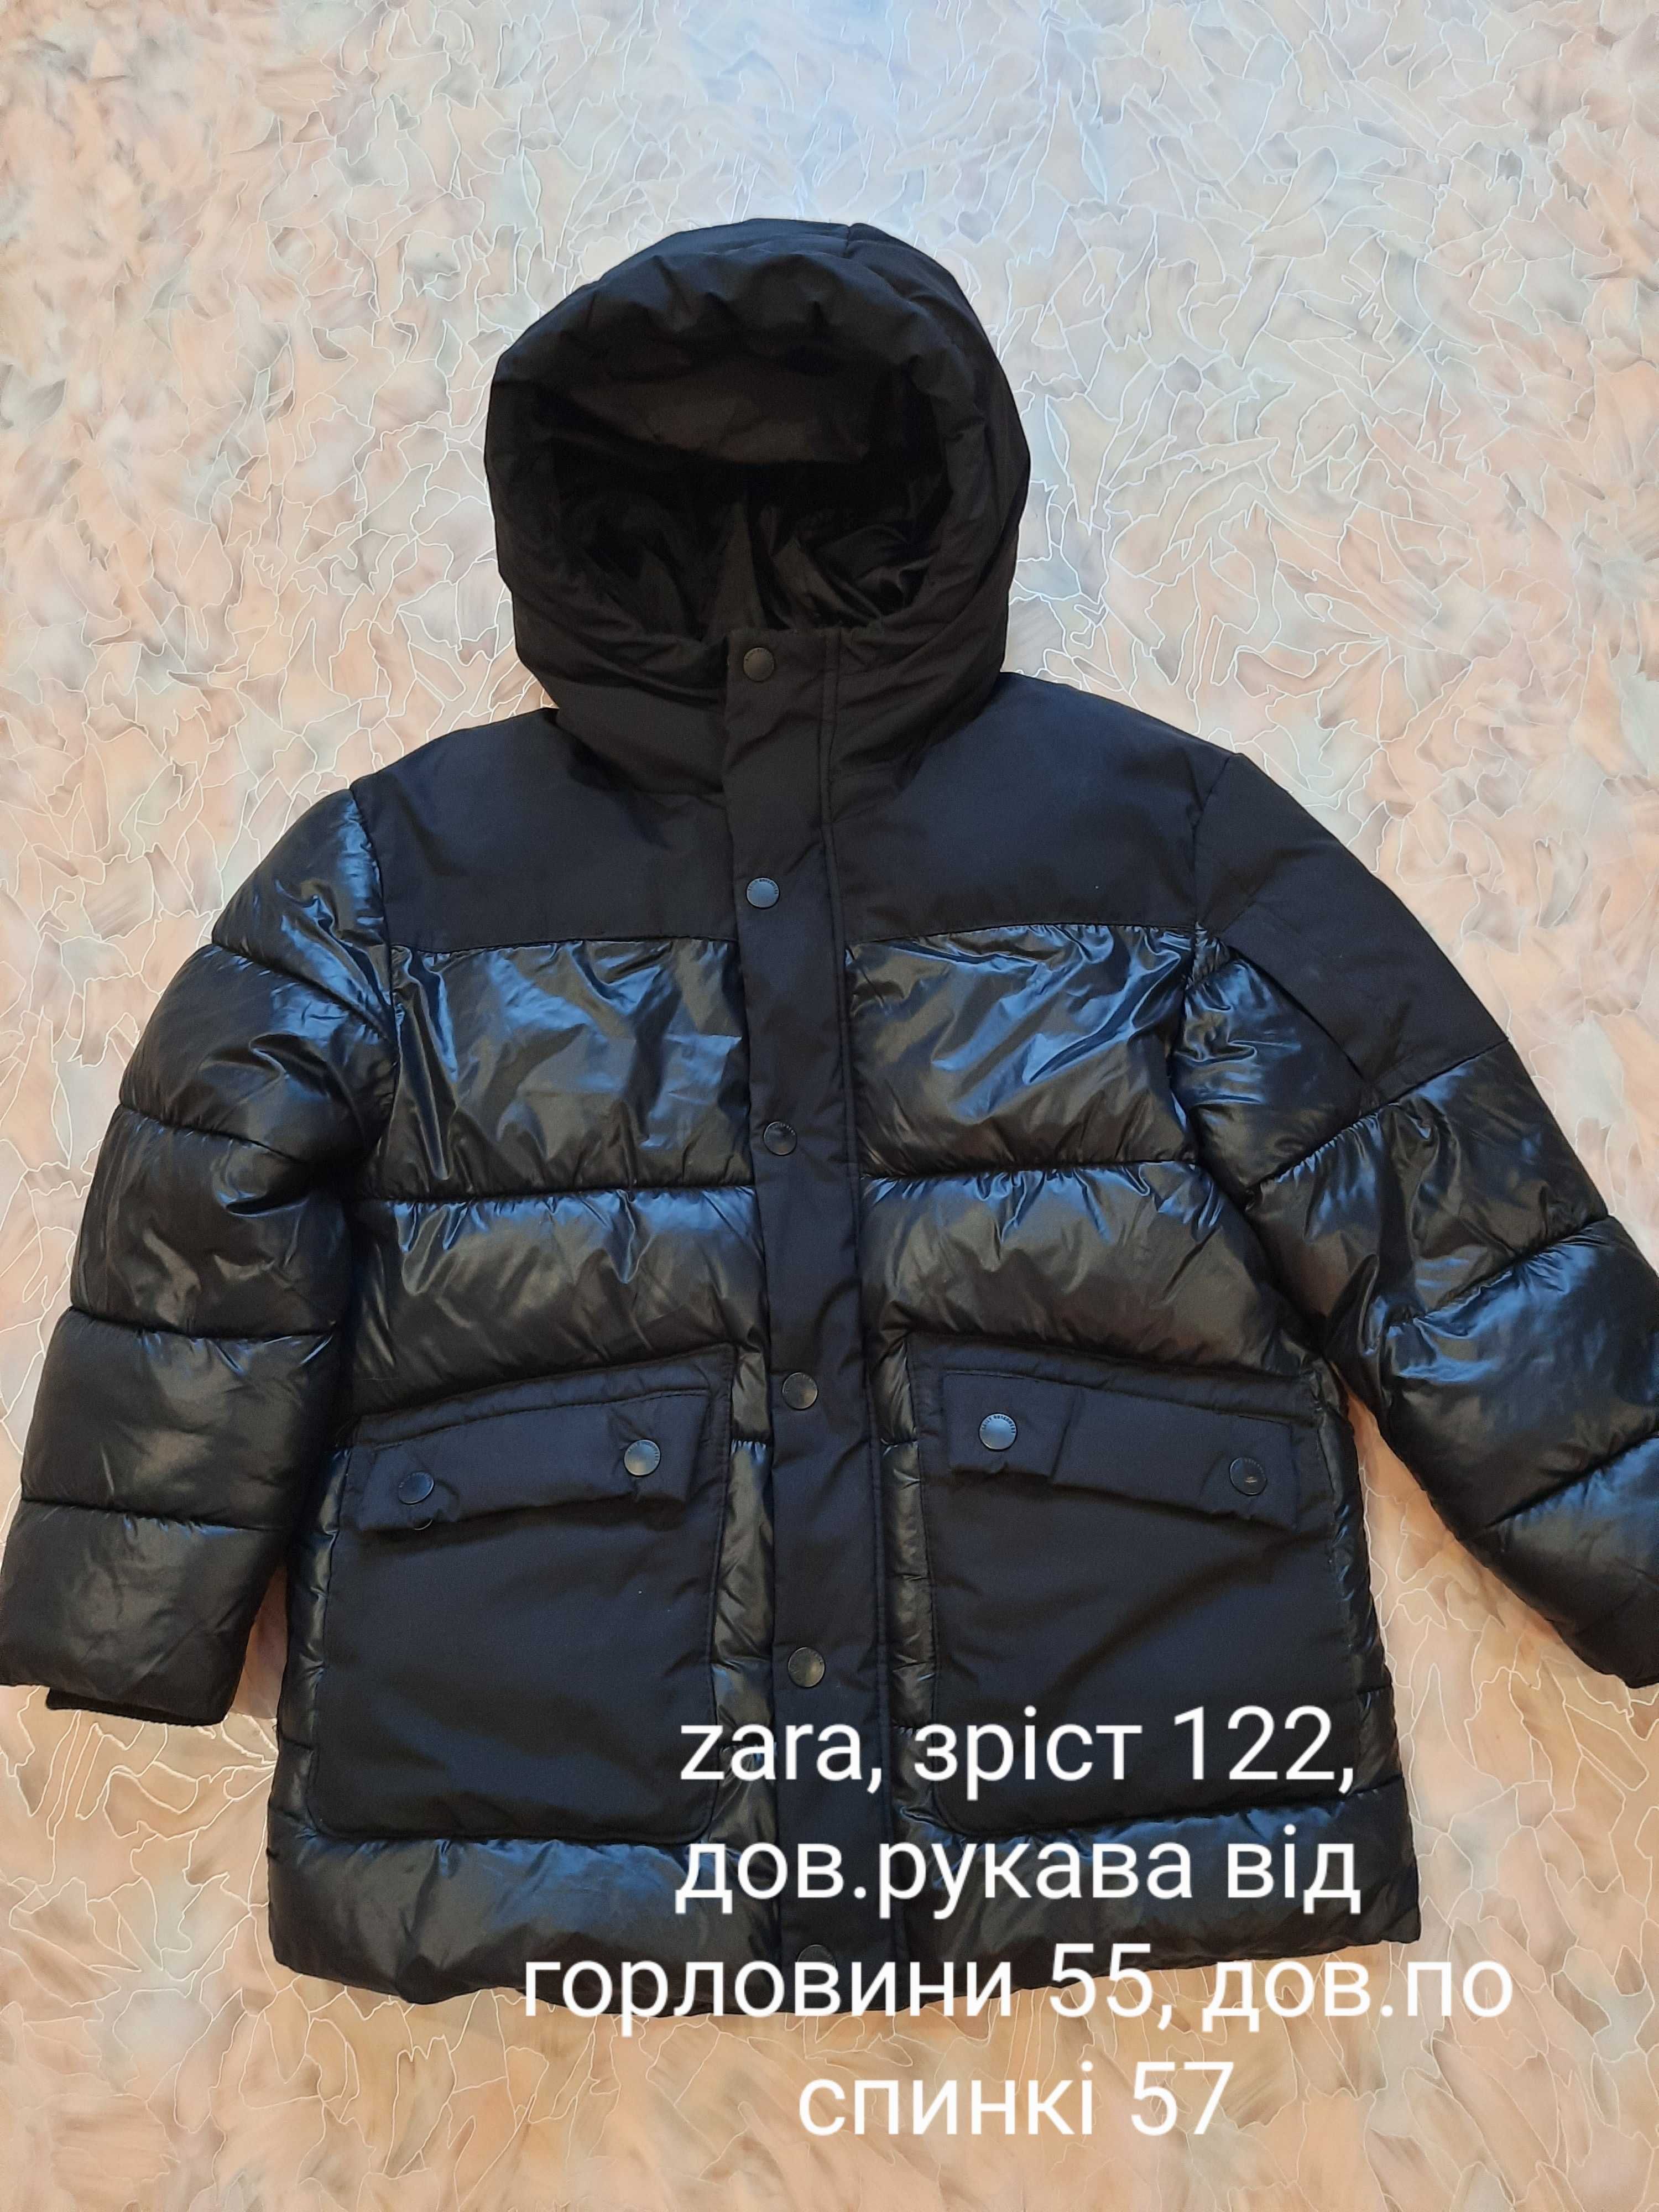 Теплая детская курточка на мальчика Zara куртка 122